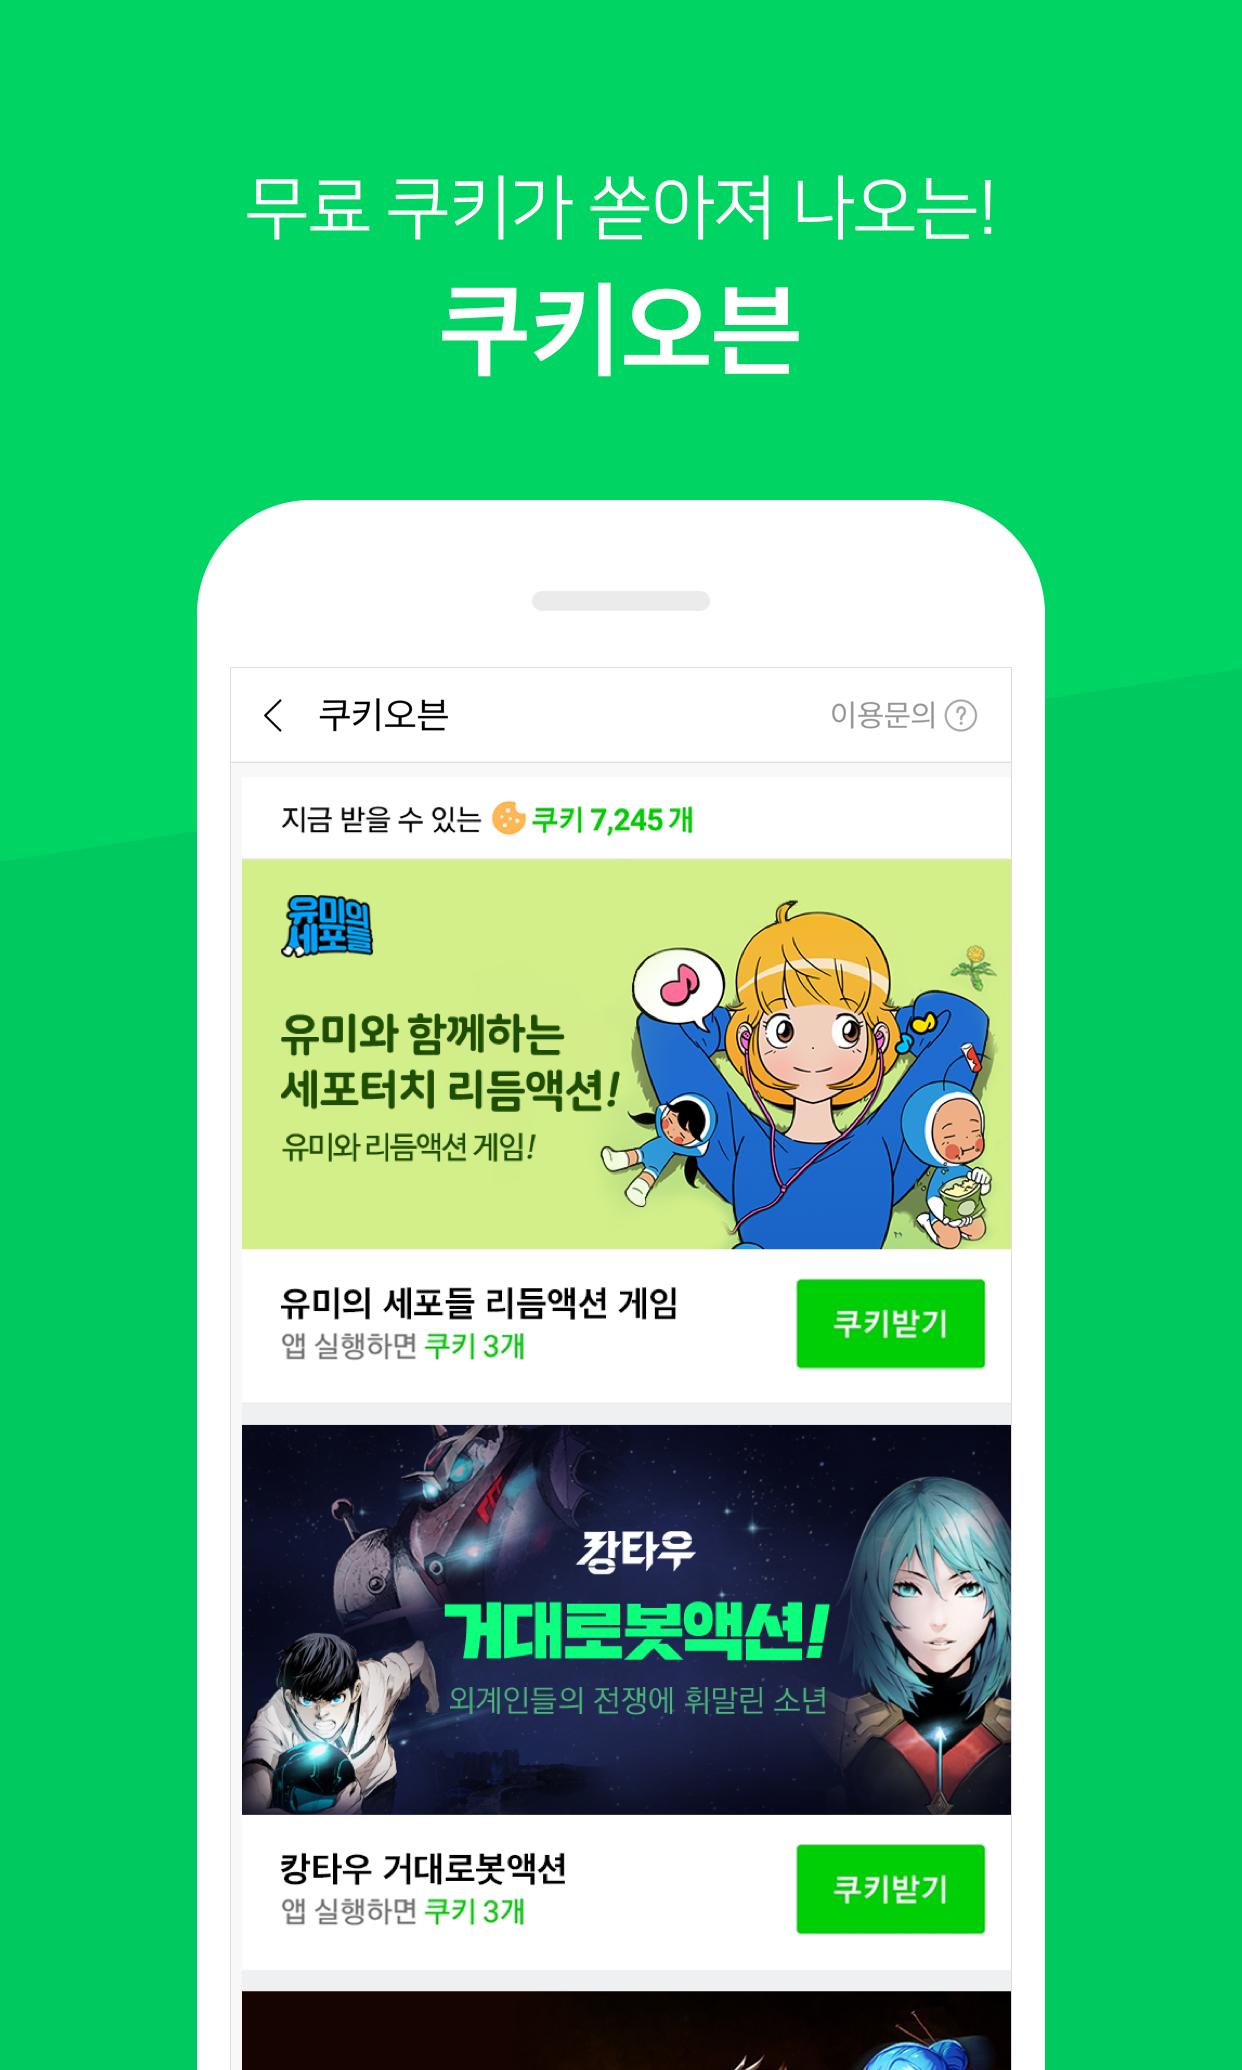 네이버 웹툰 - Naver Webtoon 1.28.0 Screenshot 7